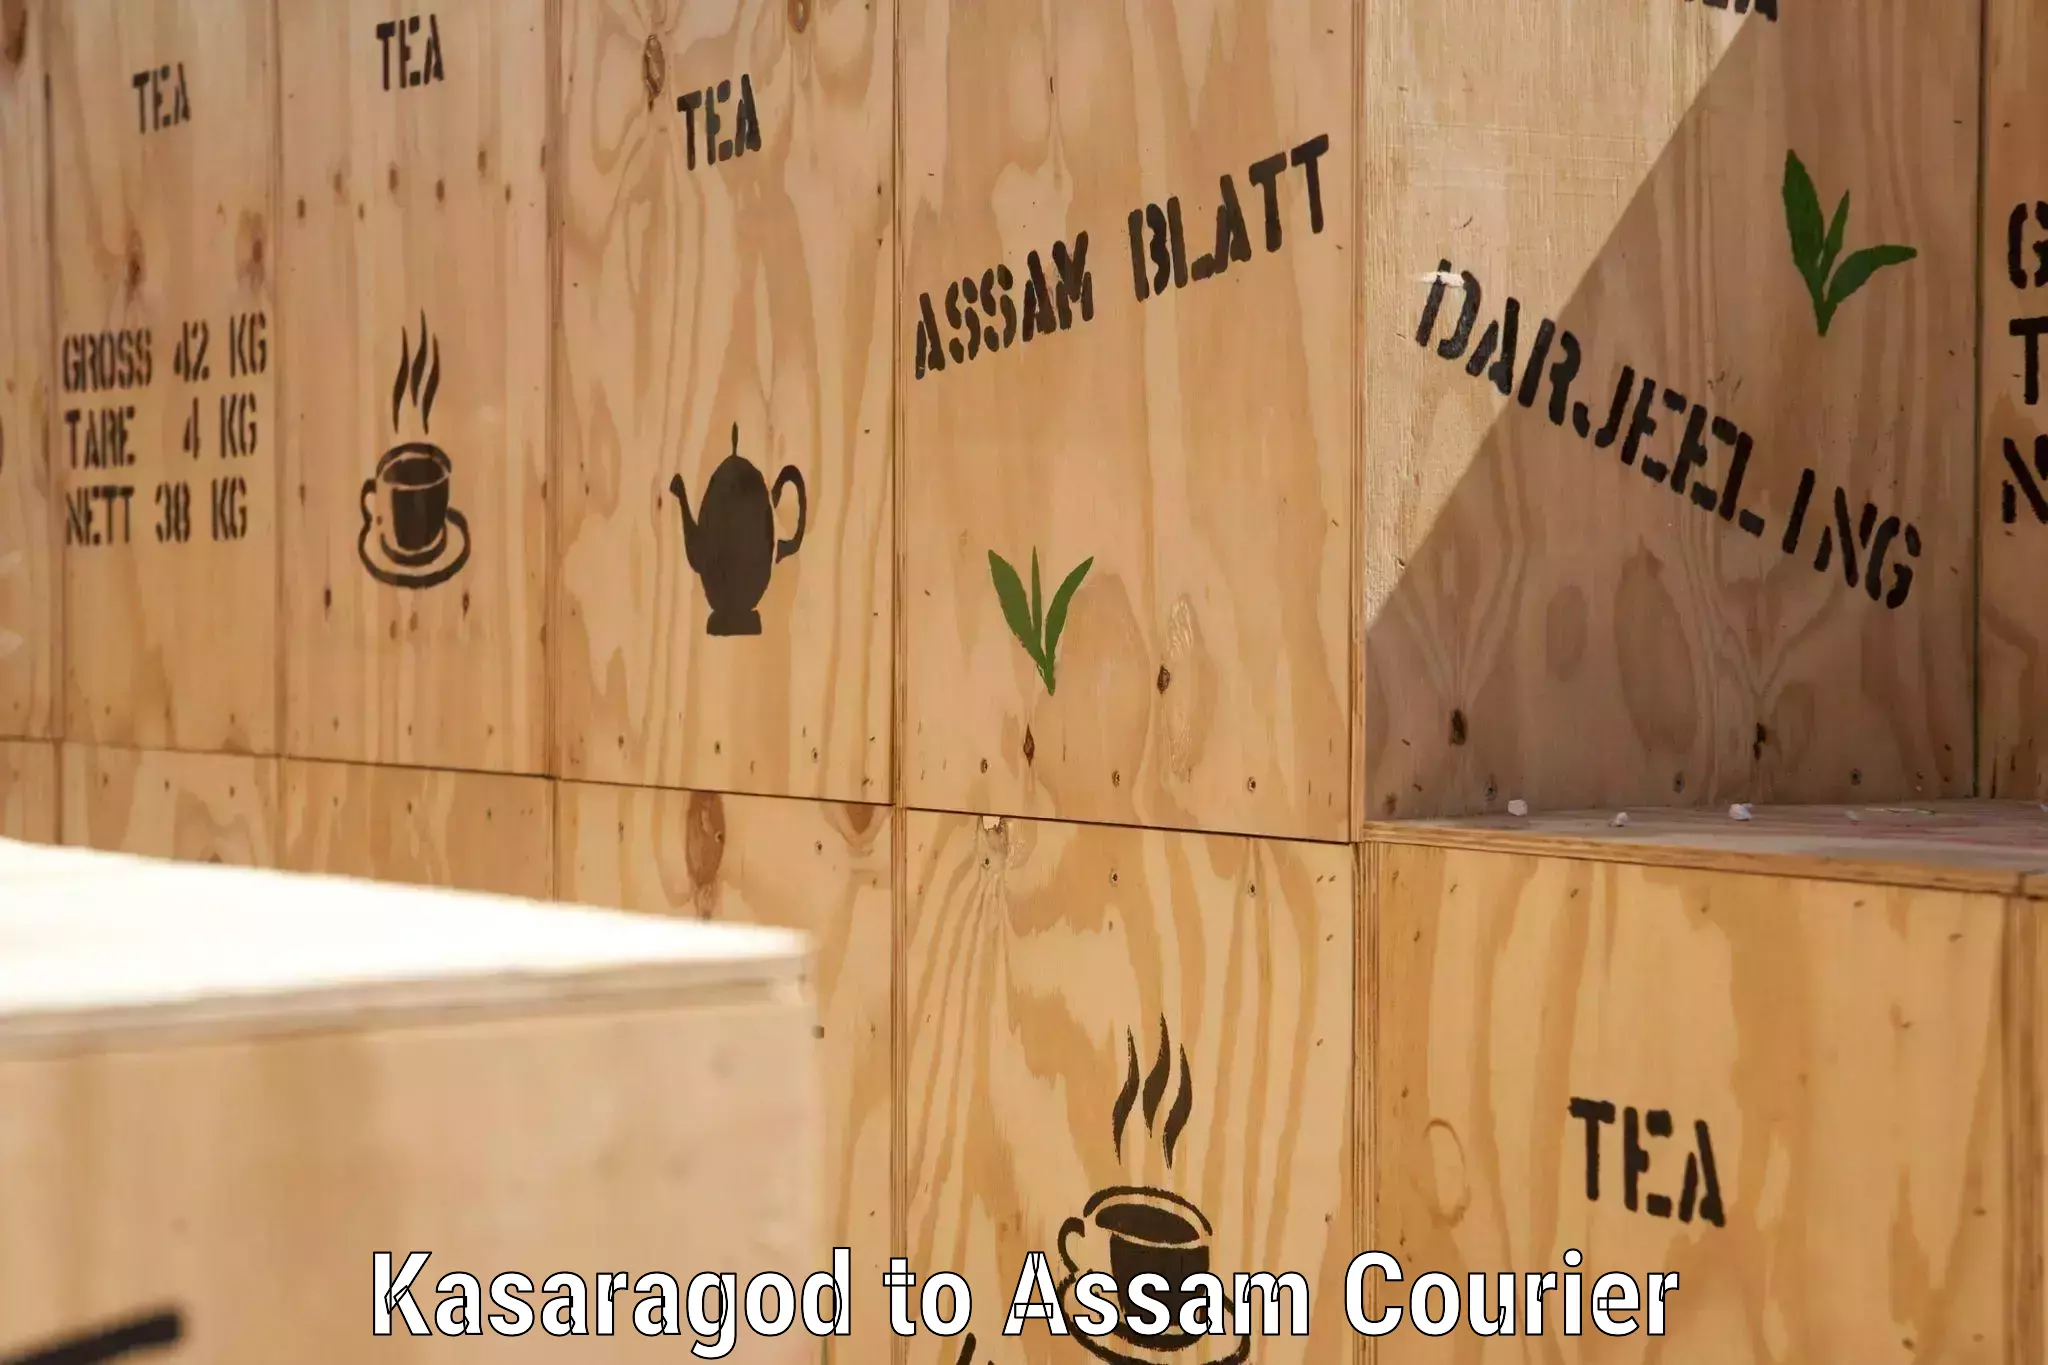 Global courier networks Kasaragod to Assam